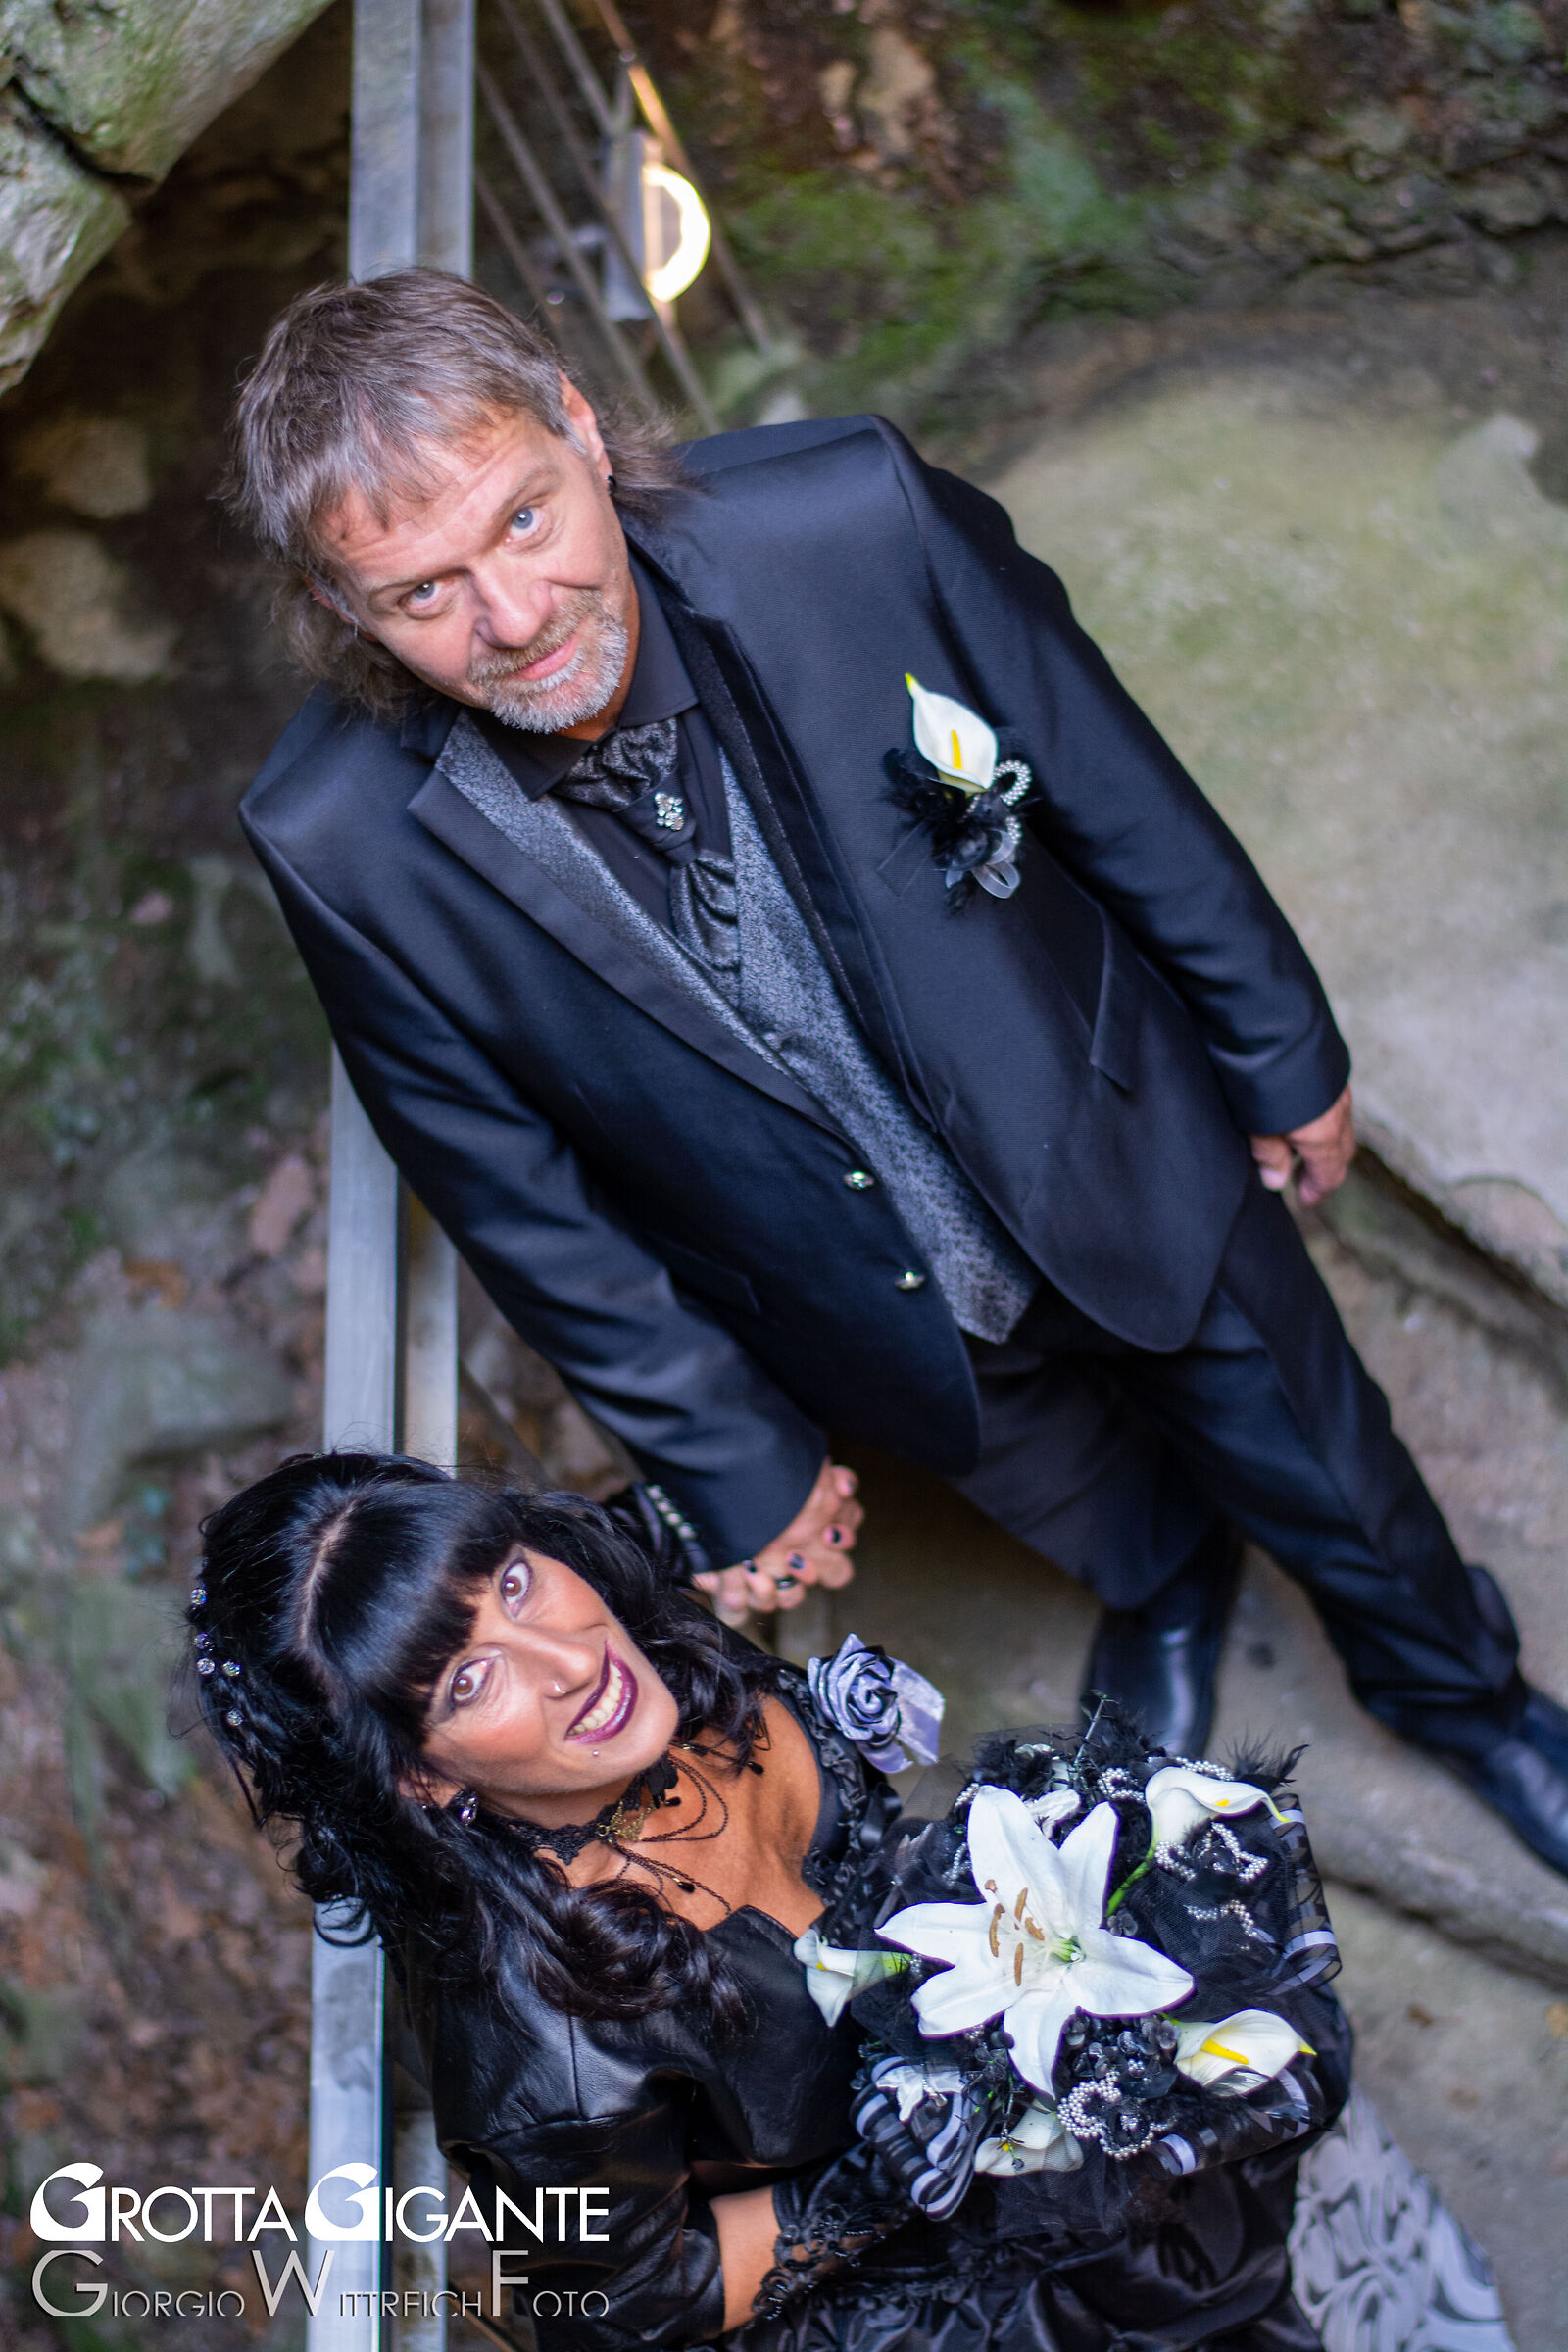 First wedding service in Grotta Gigante...